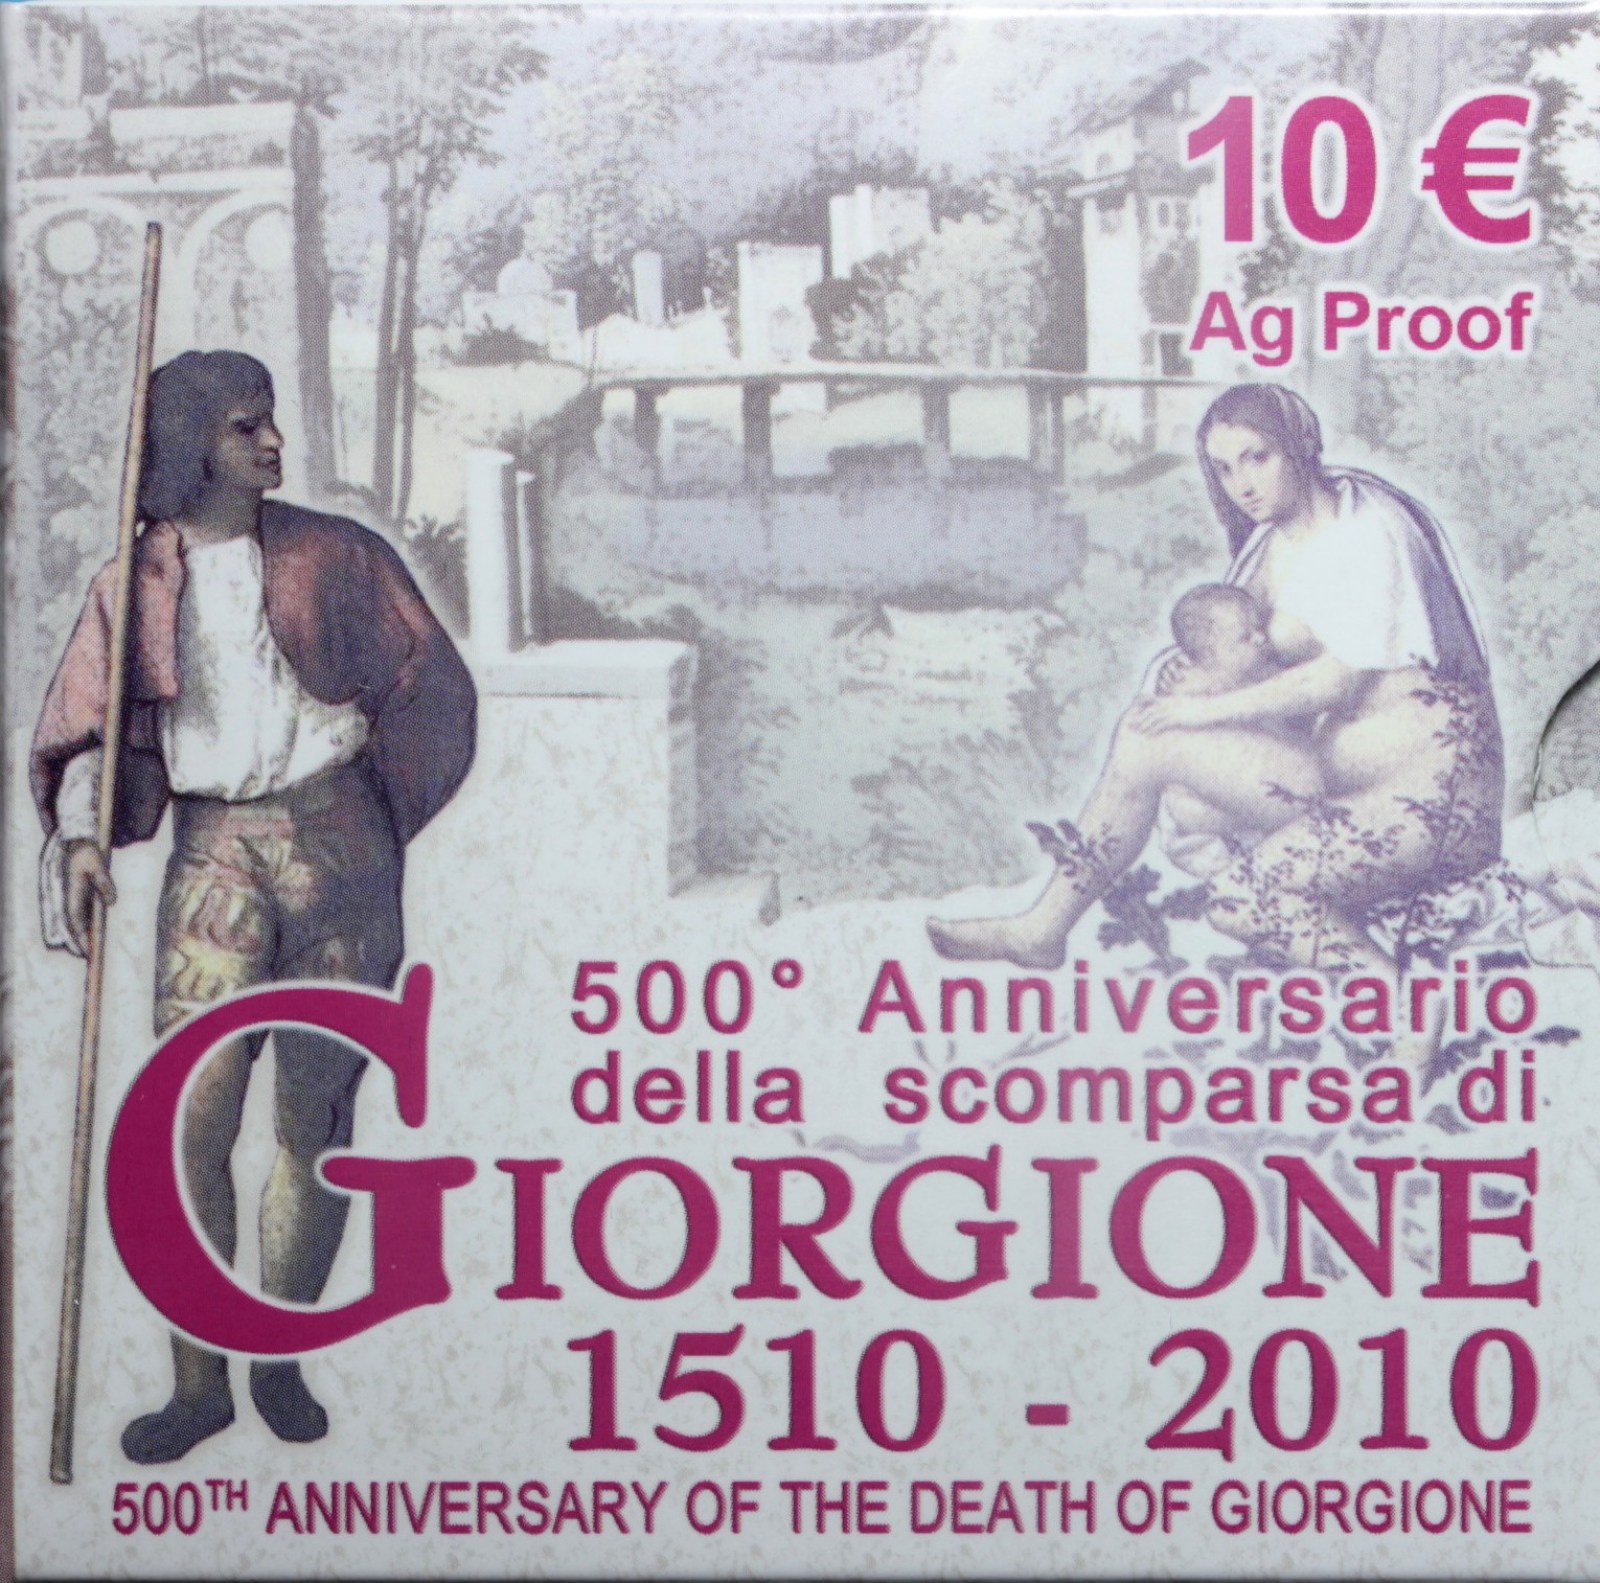 ITALIA 10 EURO COMMEMORATIVO 2010 GIORGIONE PROOF SCATOLA E GARANZIA